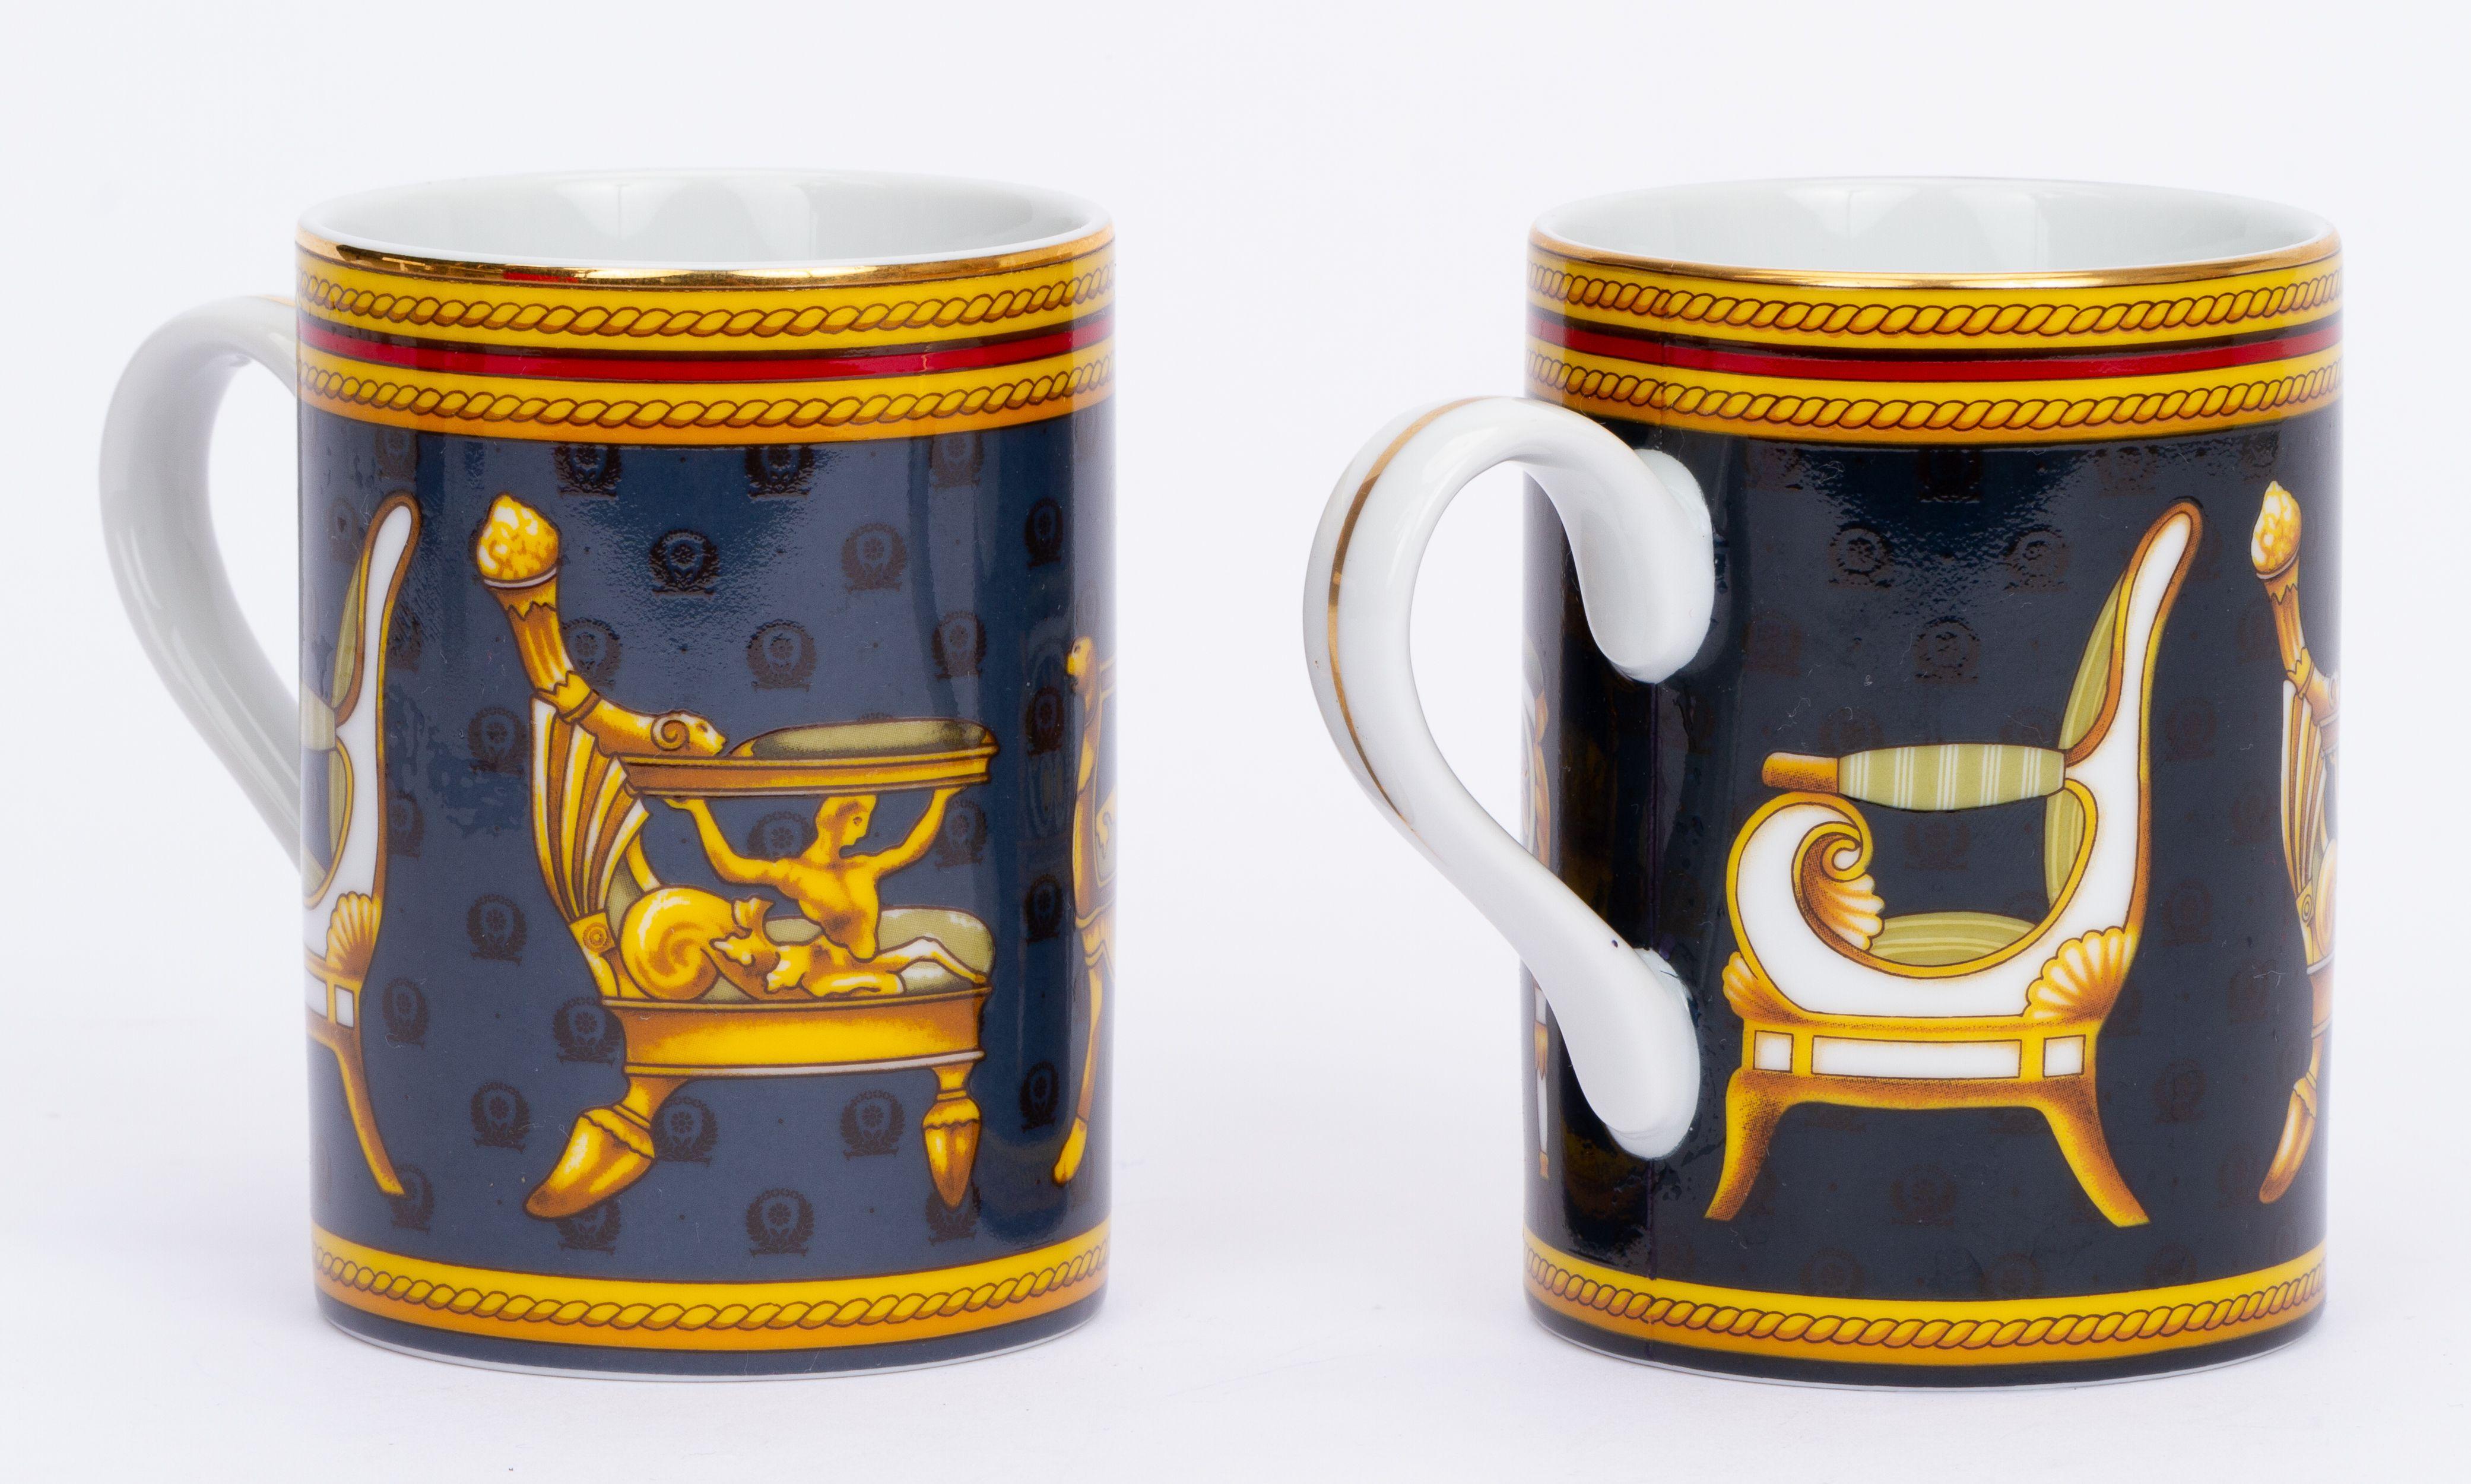 Gucci Satz von 2 Porzellan Stuhl Teetassen , verschiedene Schattierungen von Blau. Ausgezeichneter Zustand.